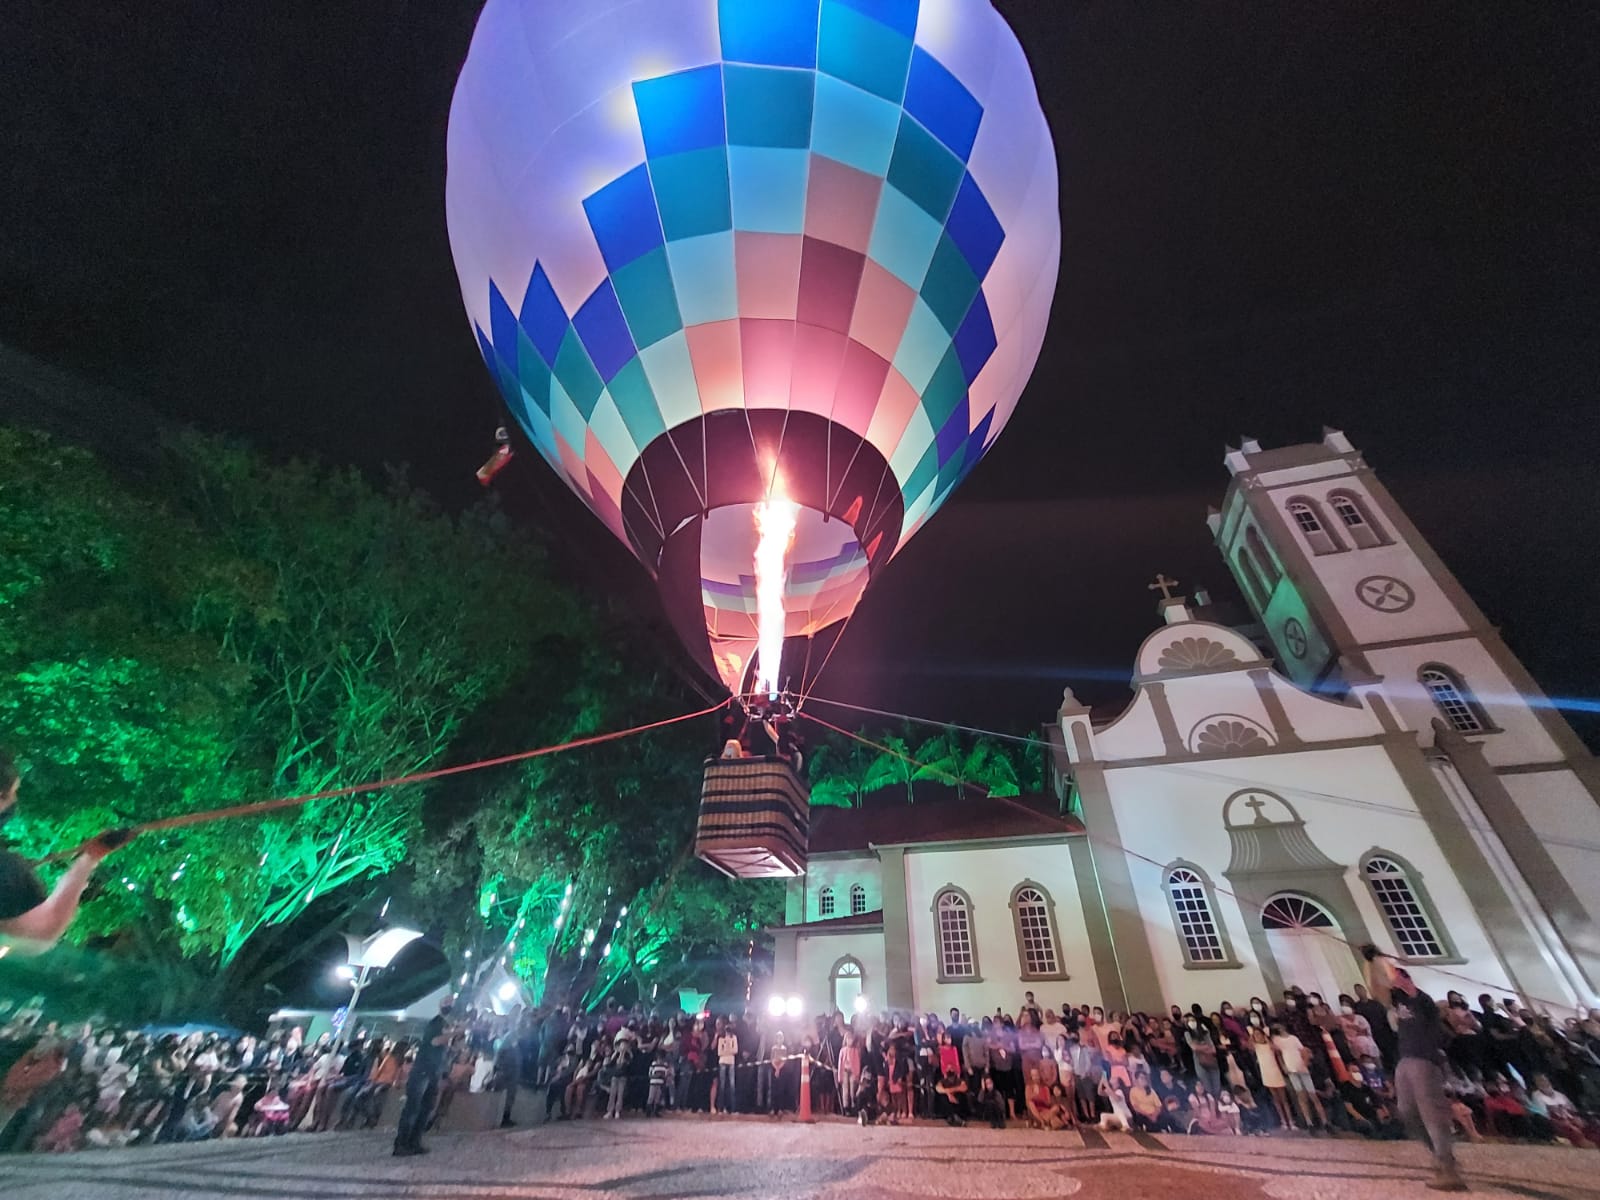 Confira fotos do momento em que o Papai Noel pousa de balão no centro de Içara